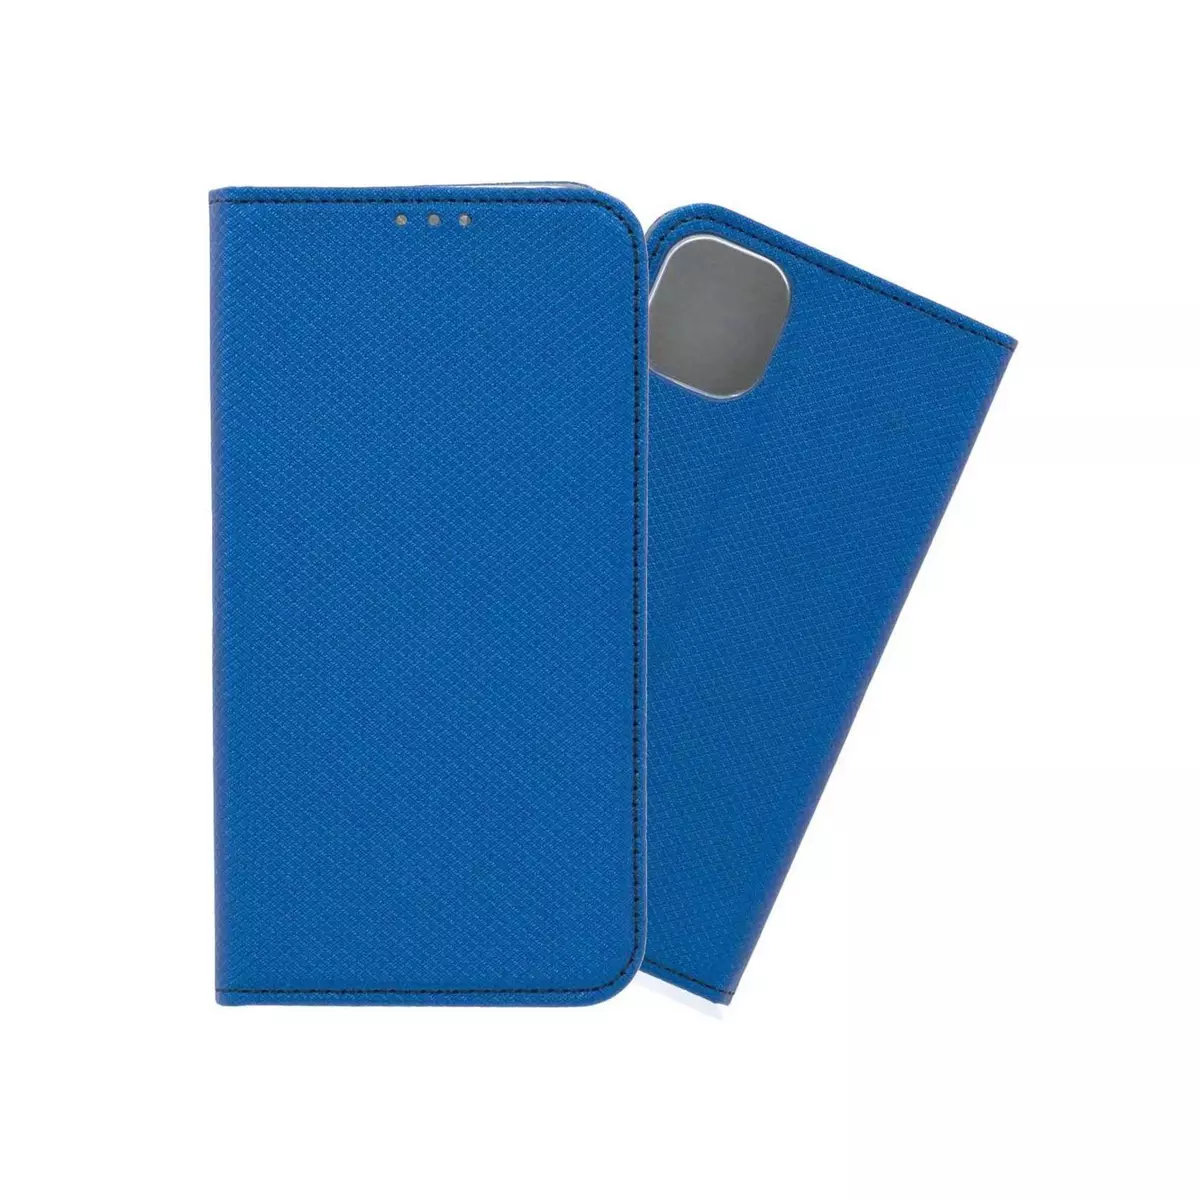 amahousse Housse bleue iPhone 11 folio texturé rabat aimanté